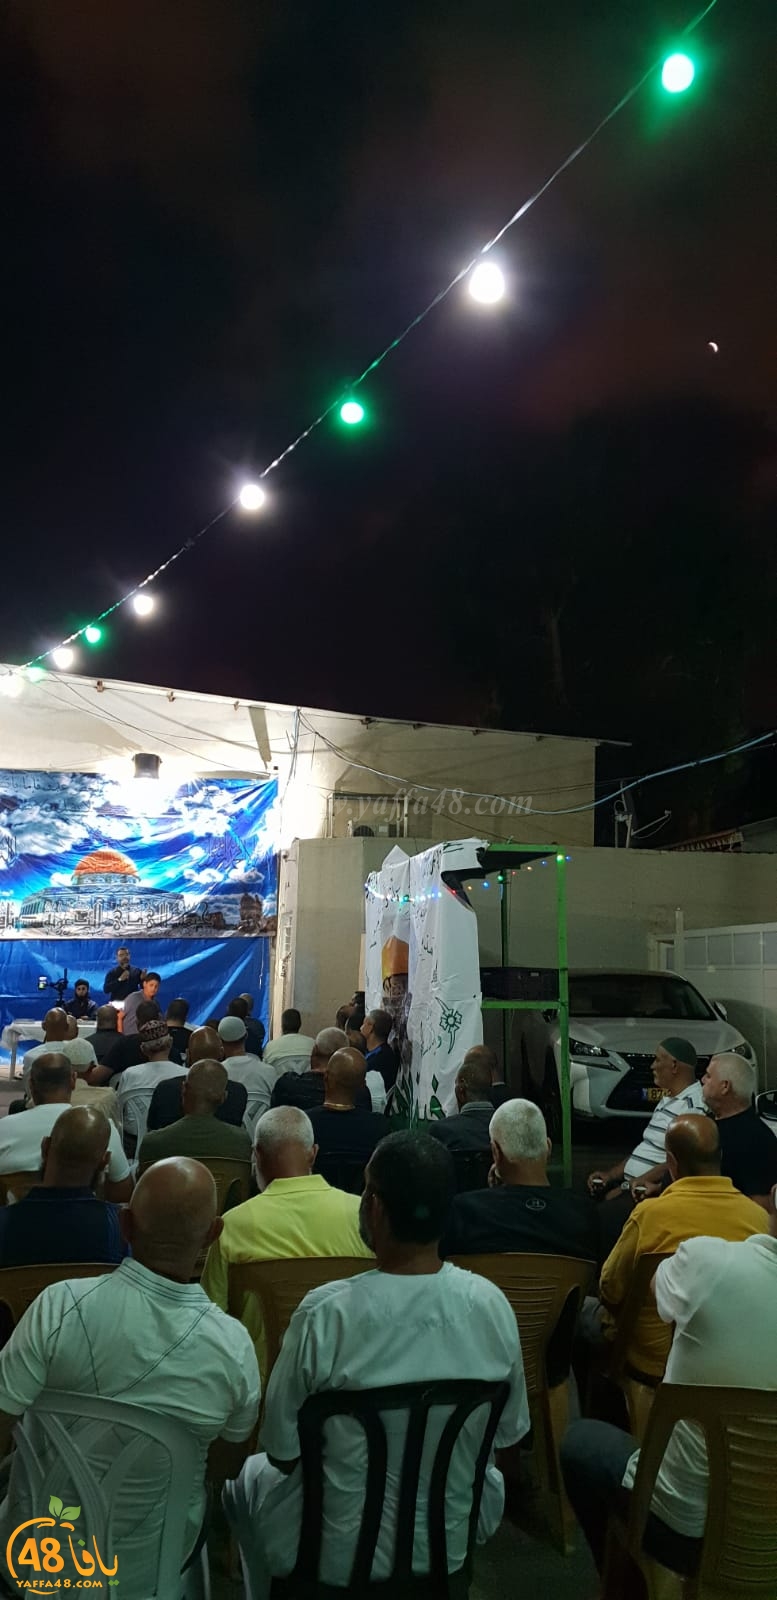 بالصور: خيمة الهدى الدعوية بيافا تُنظم أمسية دينية في ضيافة عائلة دكة